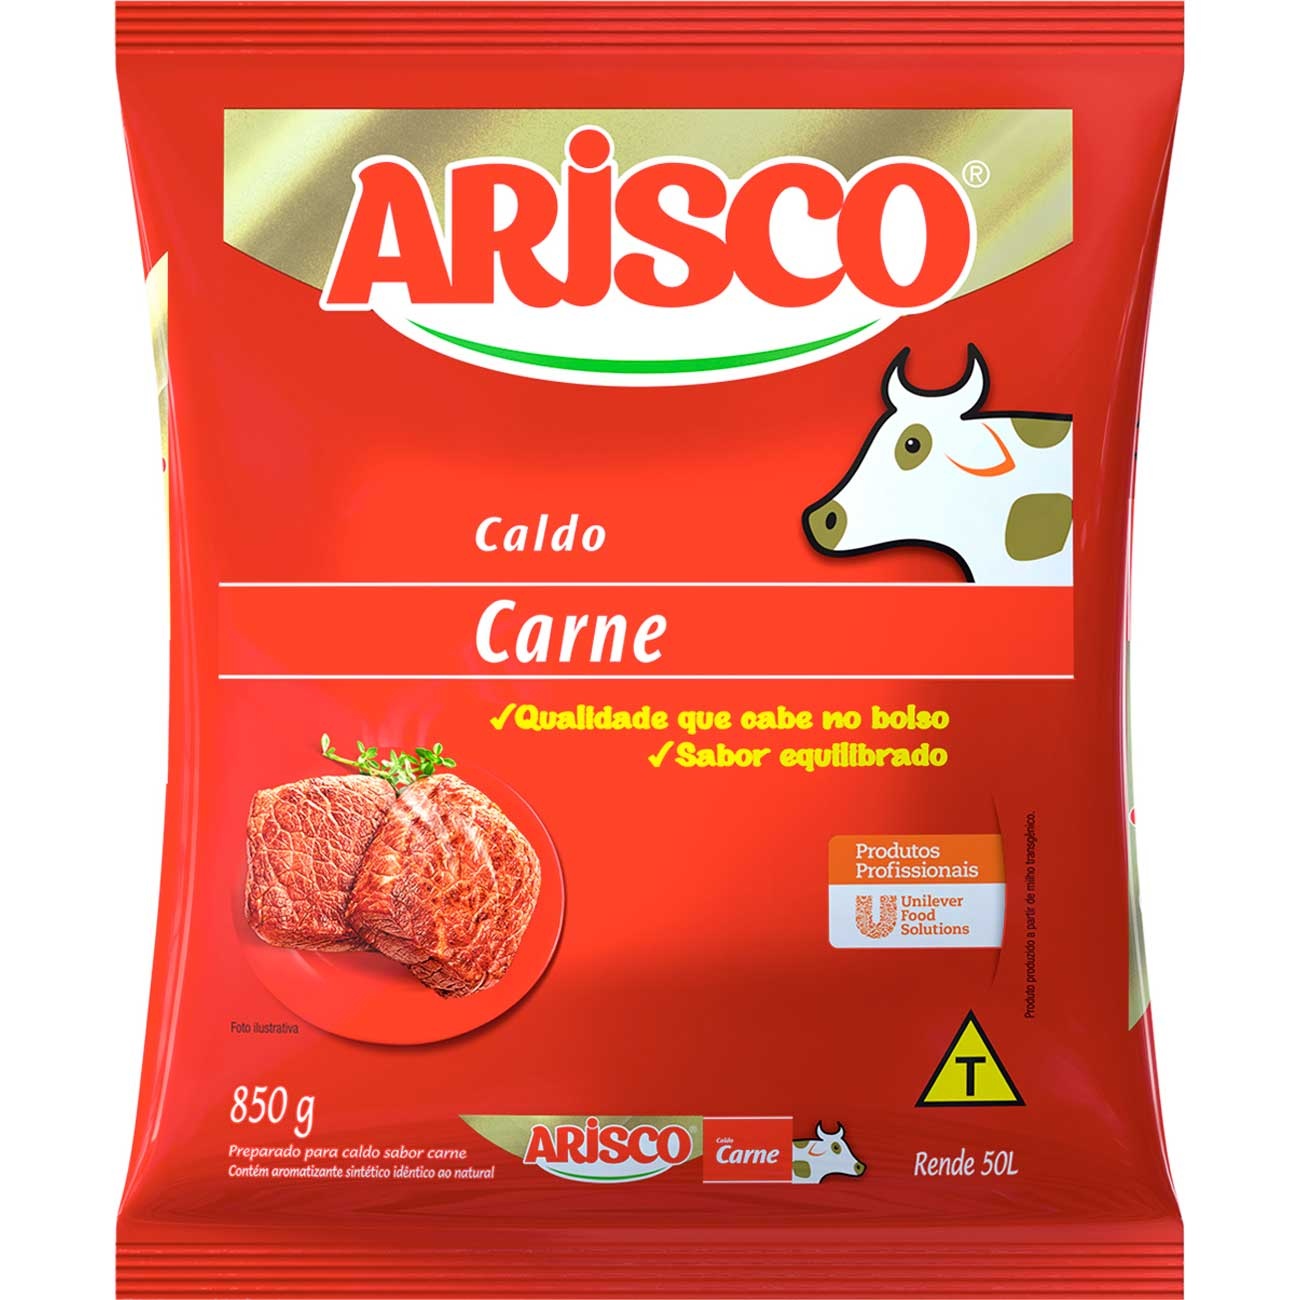 Caldo Arisco Carne 850g